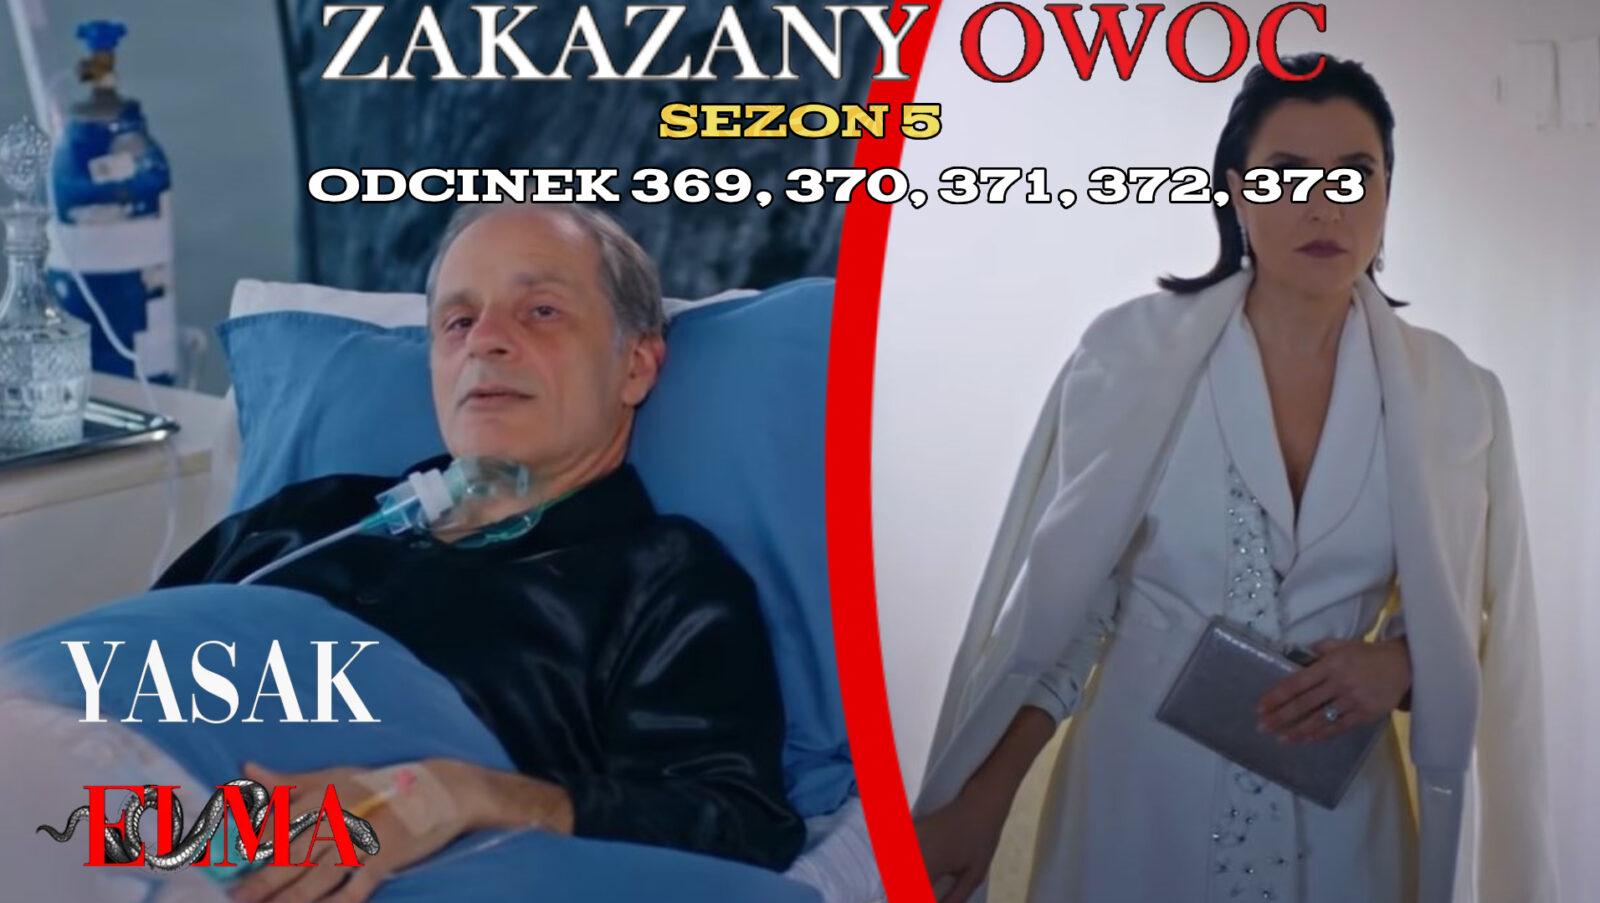 Zakazany Owoc odcinek 369, 370, 371, 372, 373 online ZA DARMO – Serial turecki ZAKAZANY OWOC na TVP VOD